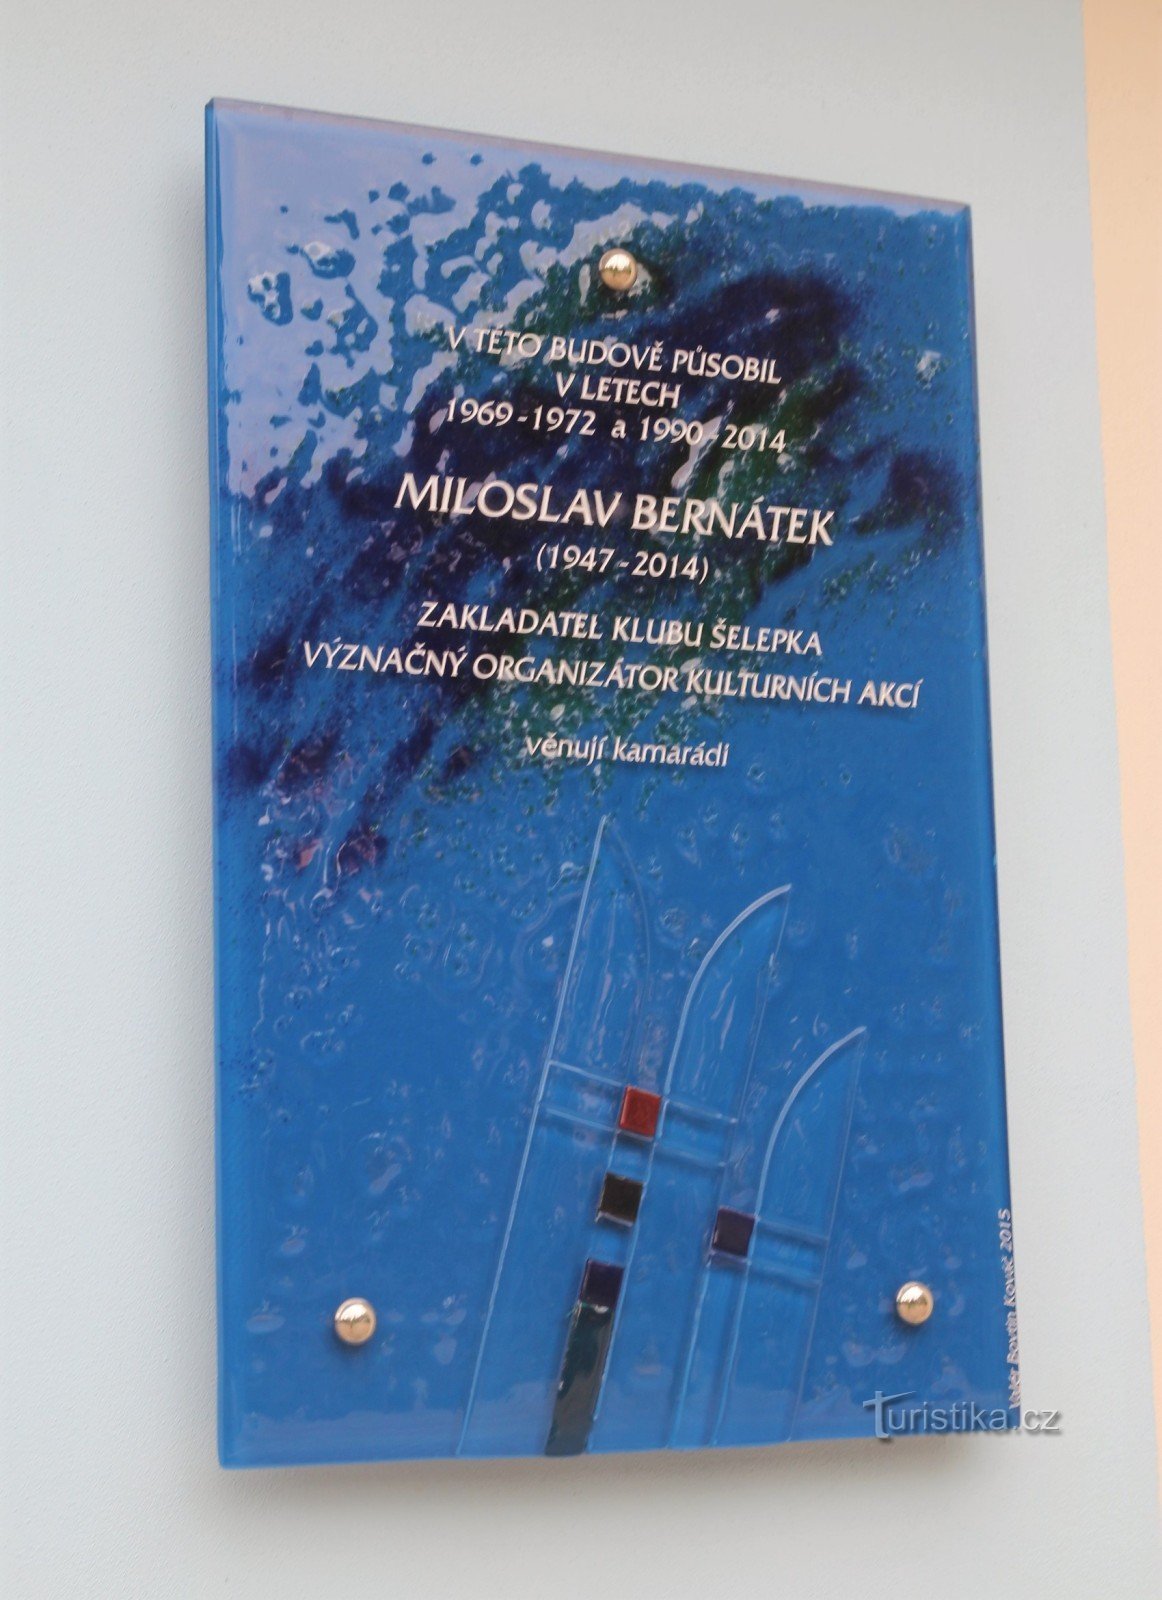 Brno-Ponava - placă memorială a lui Miloš Bernátek